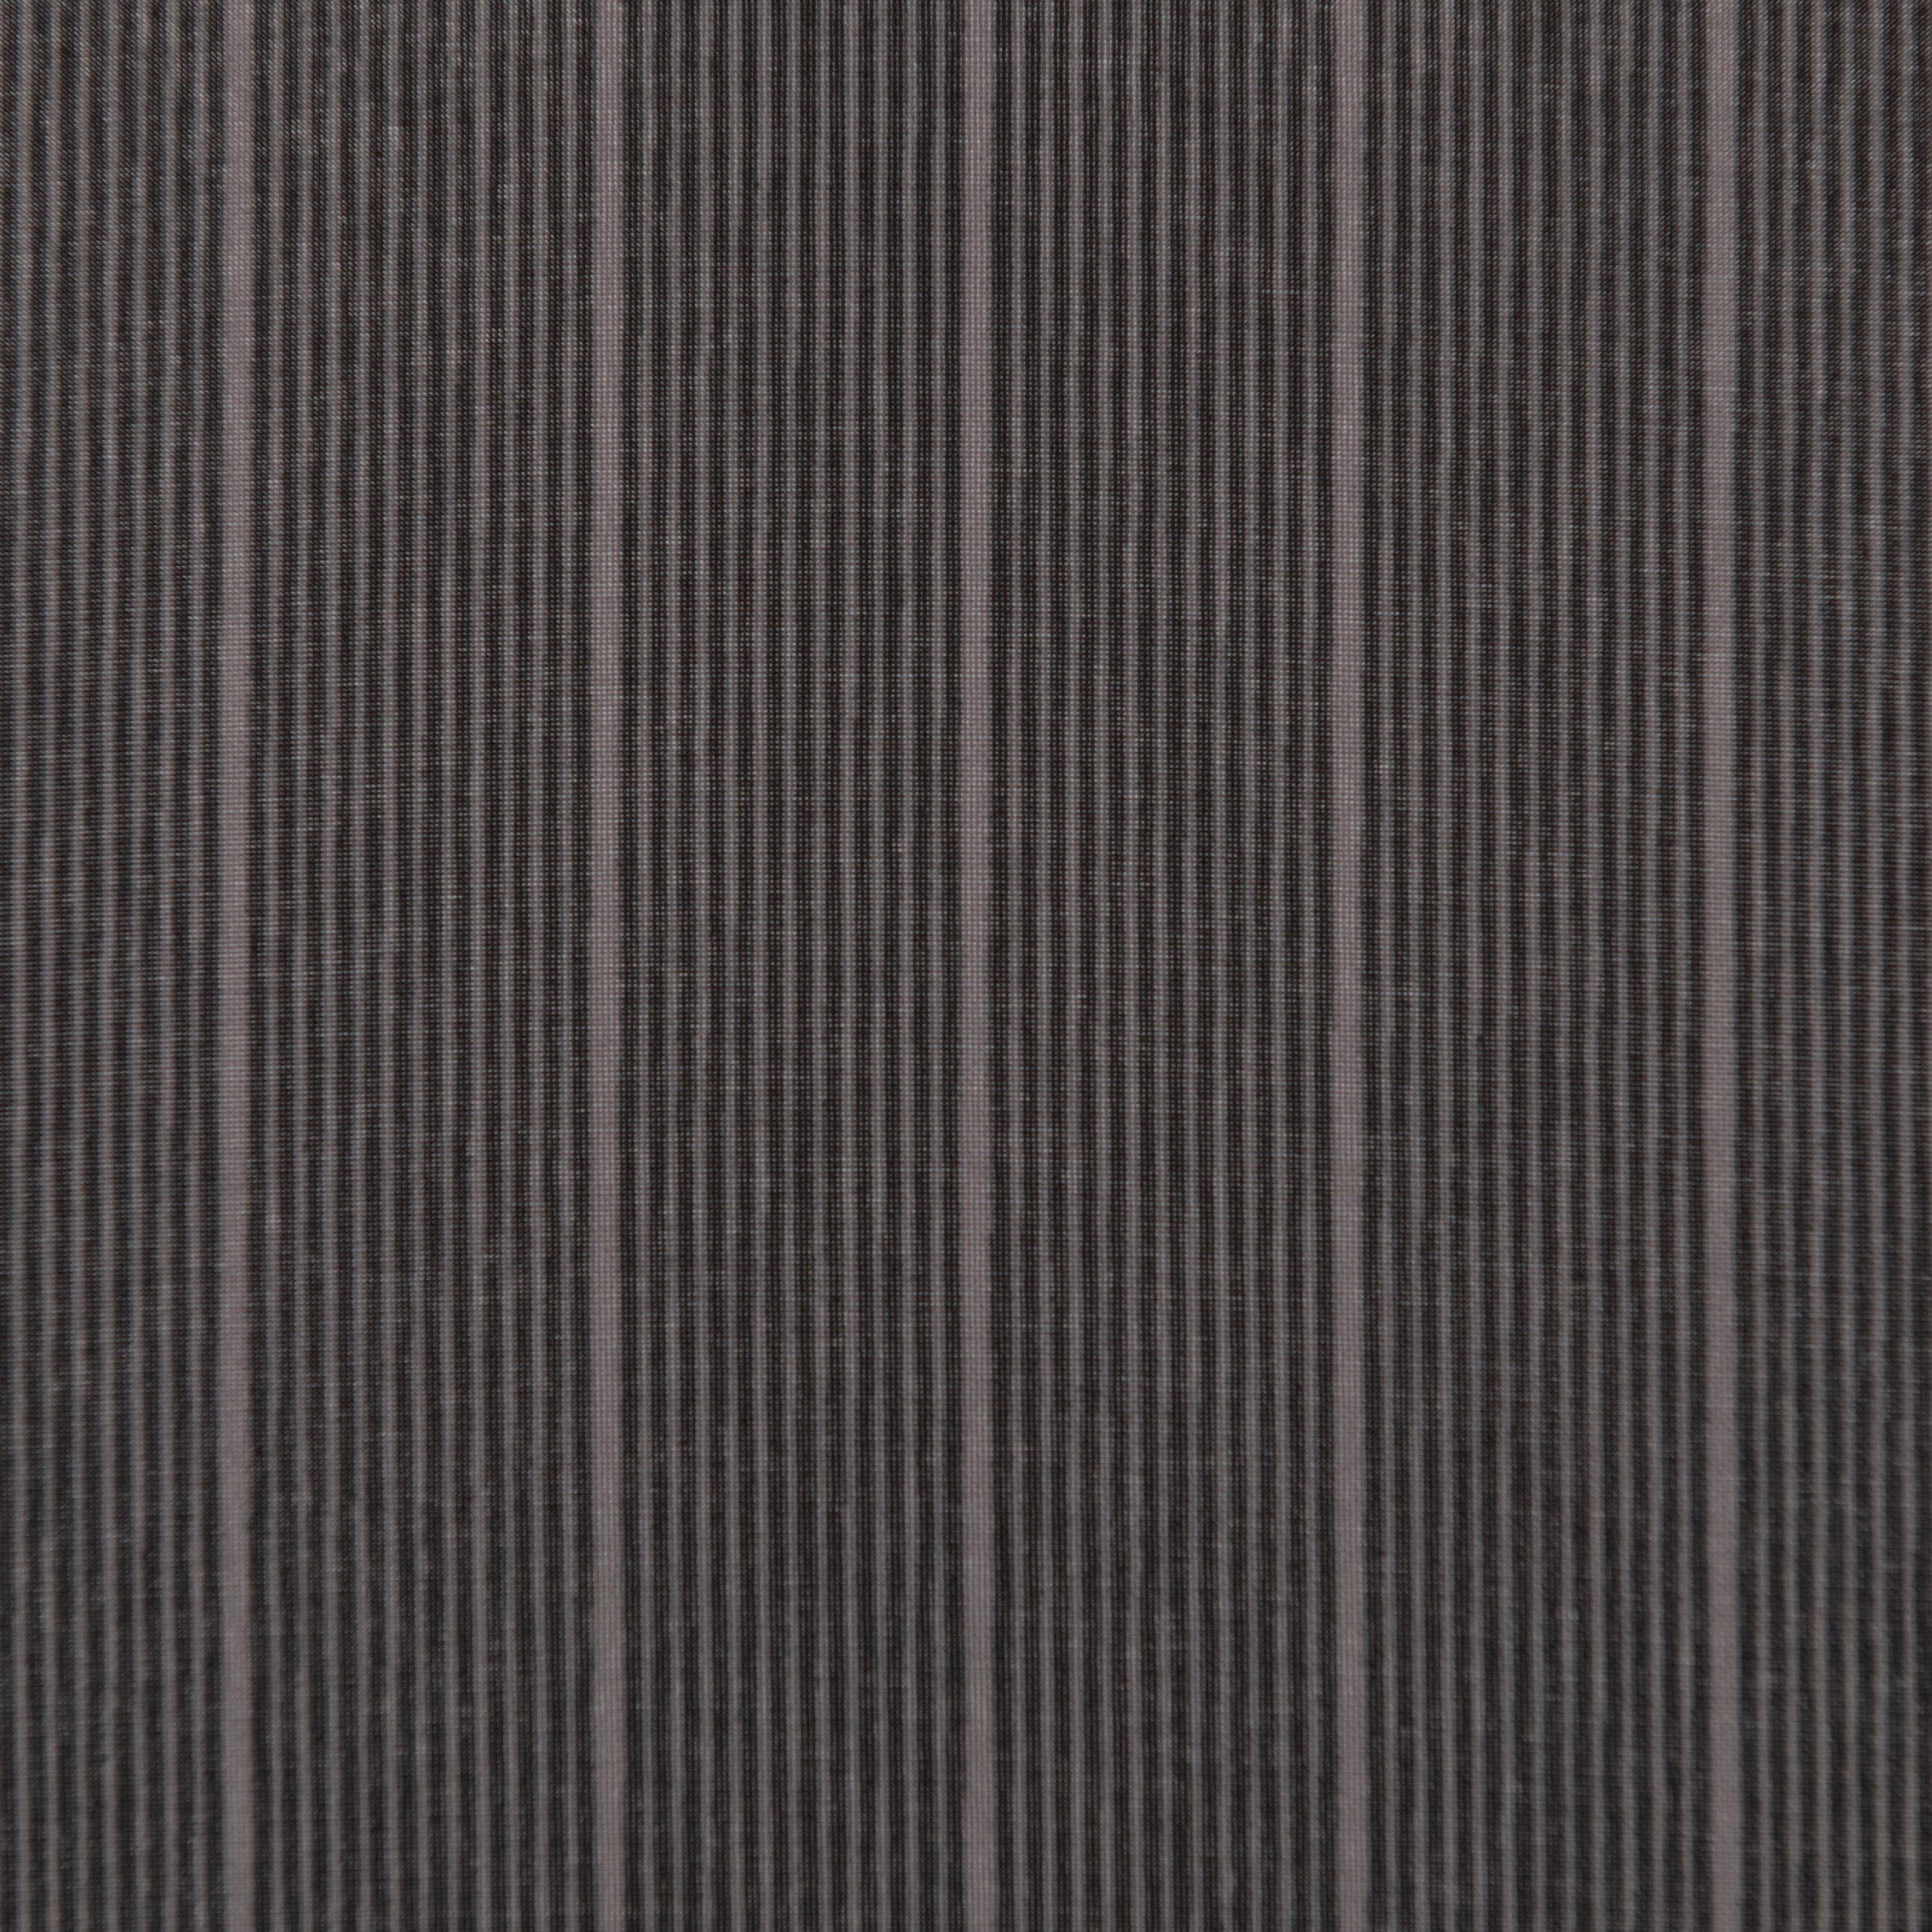 Stripe Superstrong, Taschenregenschirm Magic stripe Fiber Glen doppler®